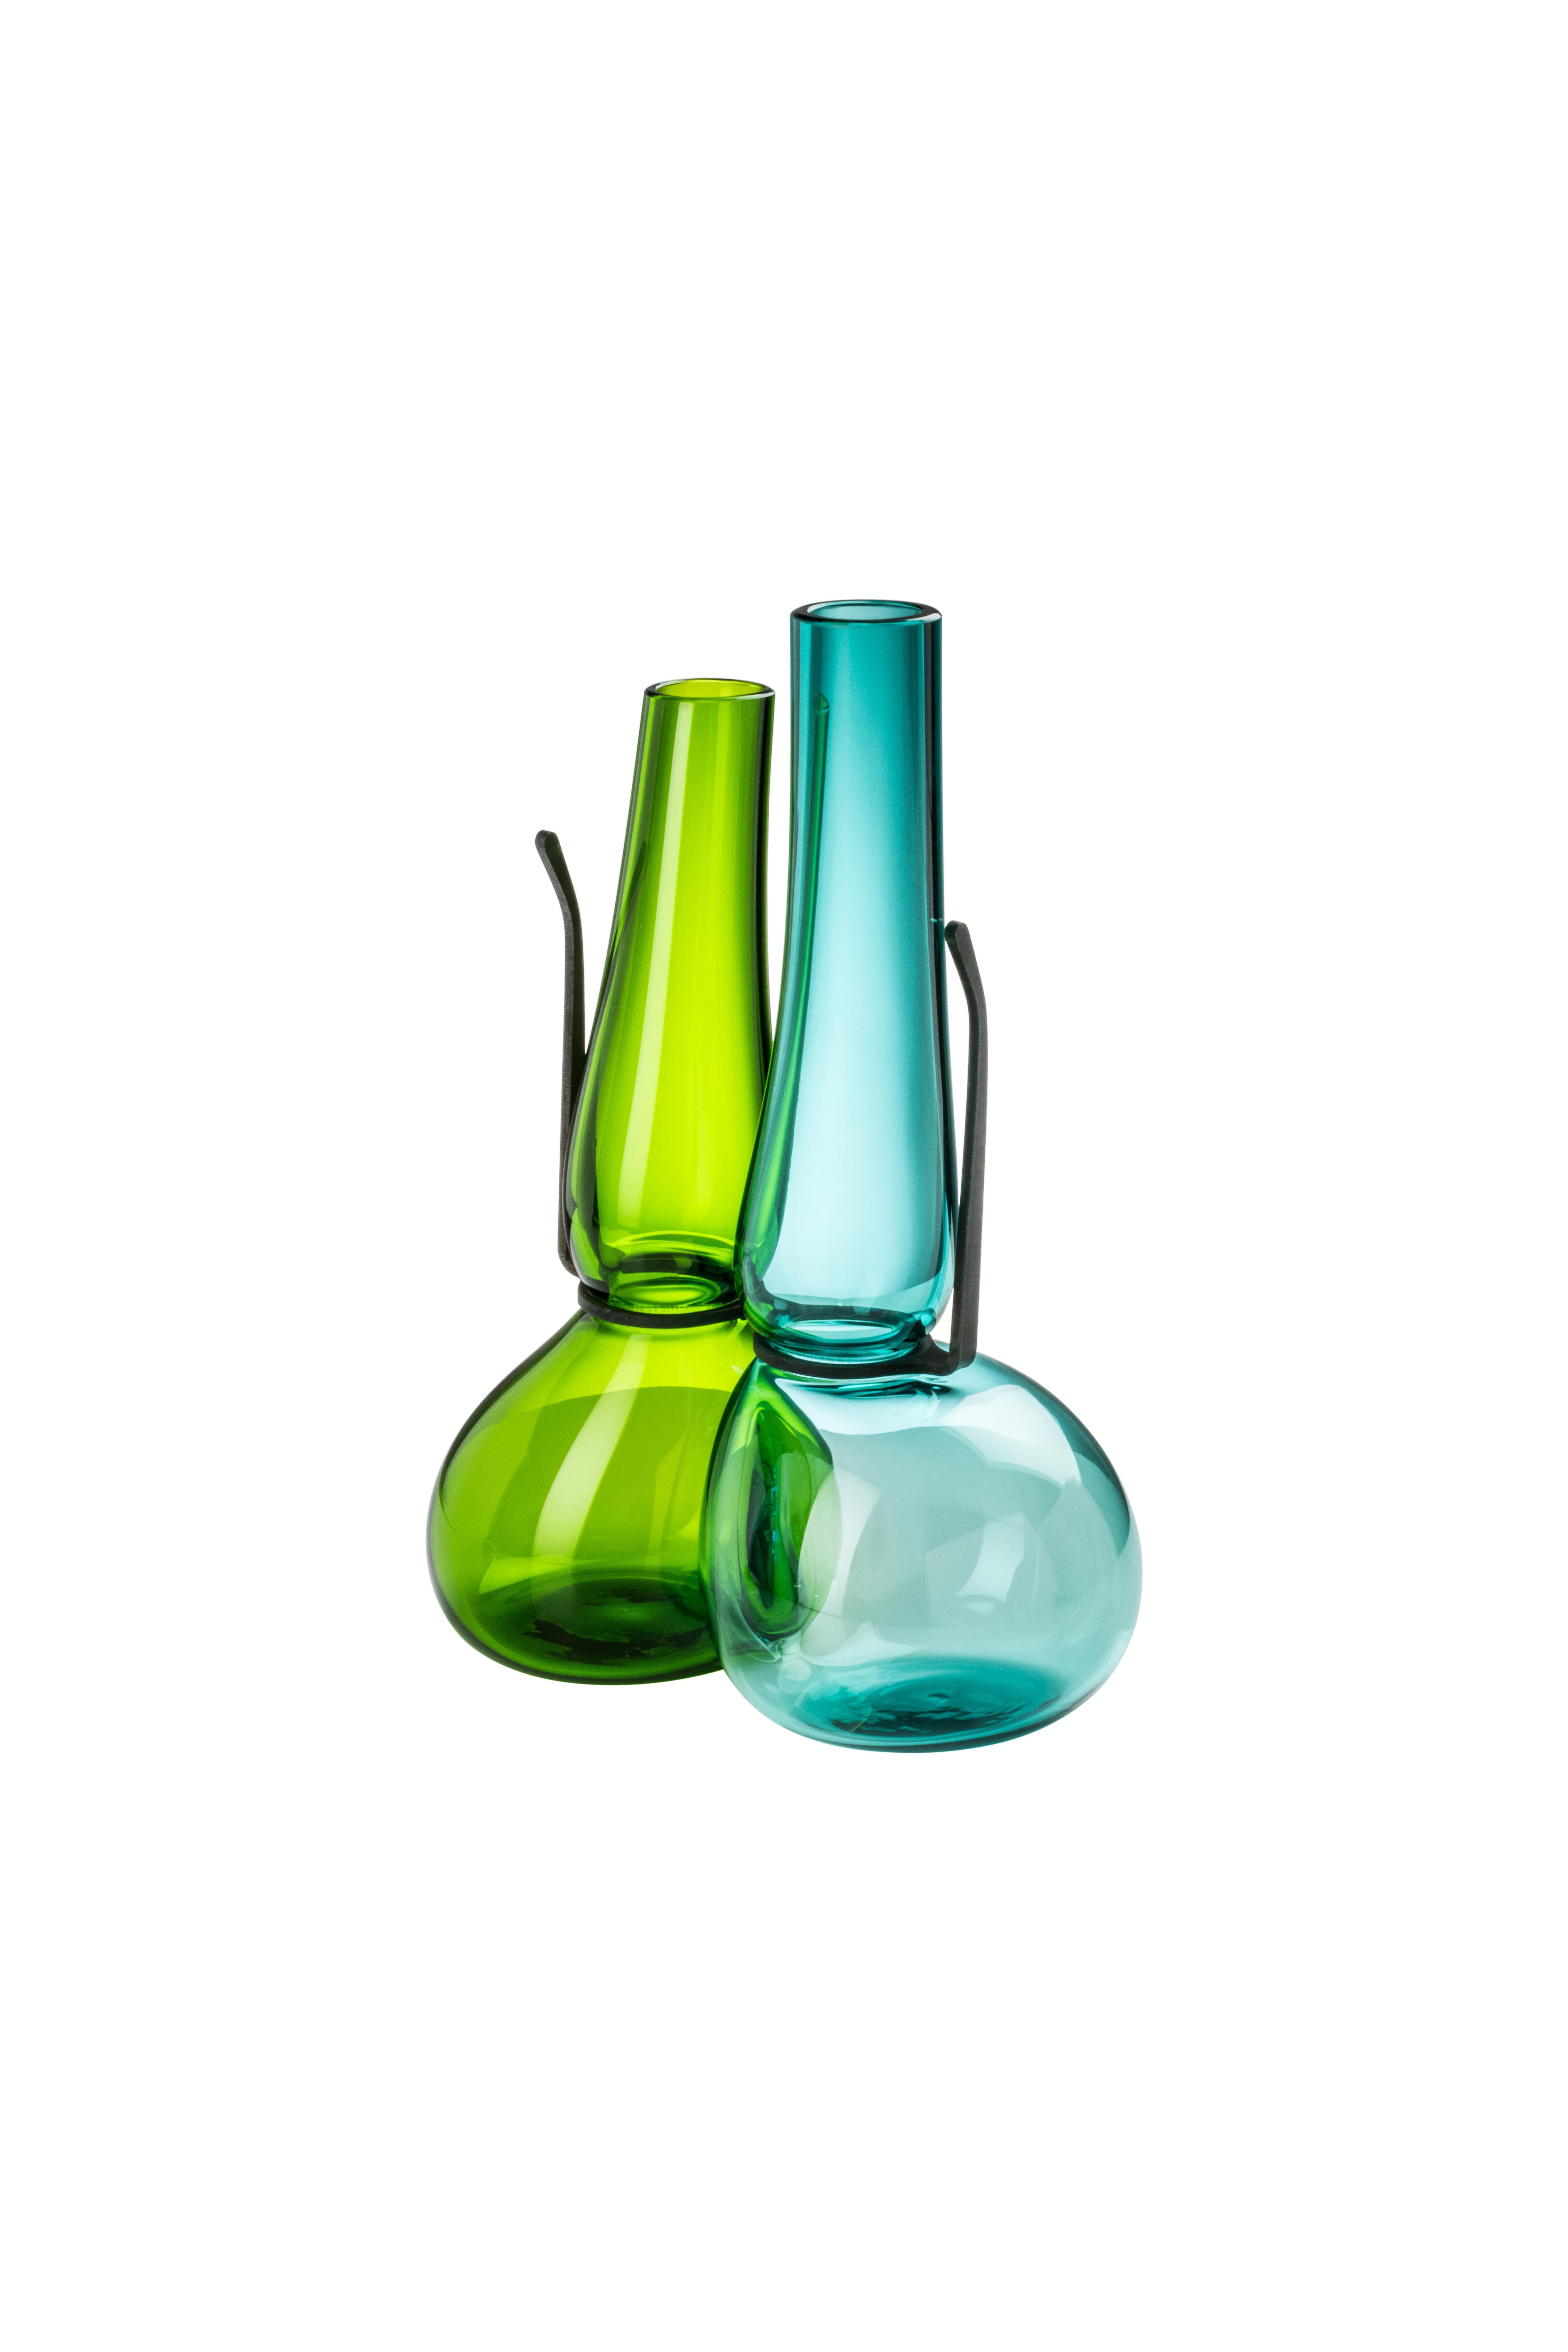 Venini Doppelglasvase in Mintgrün und Grasgrün, entworfen von Ron Arad im Jahr 2018. Perfekt für die Innendekoration als Behälter oder Schmuckstück für jeden Raum. Auch in anderen Farben auf 1stdibs erhältlich.

Abmessungen: 20 cm Durchmesser x cm